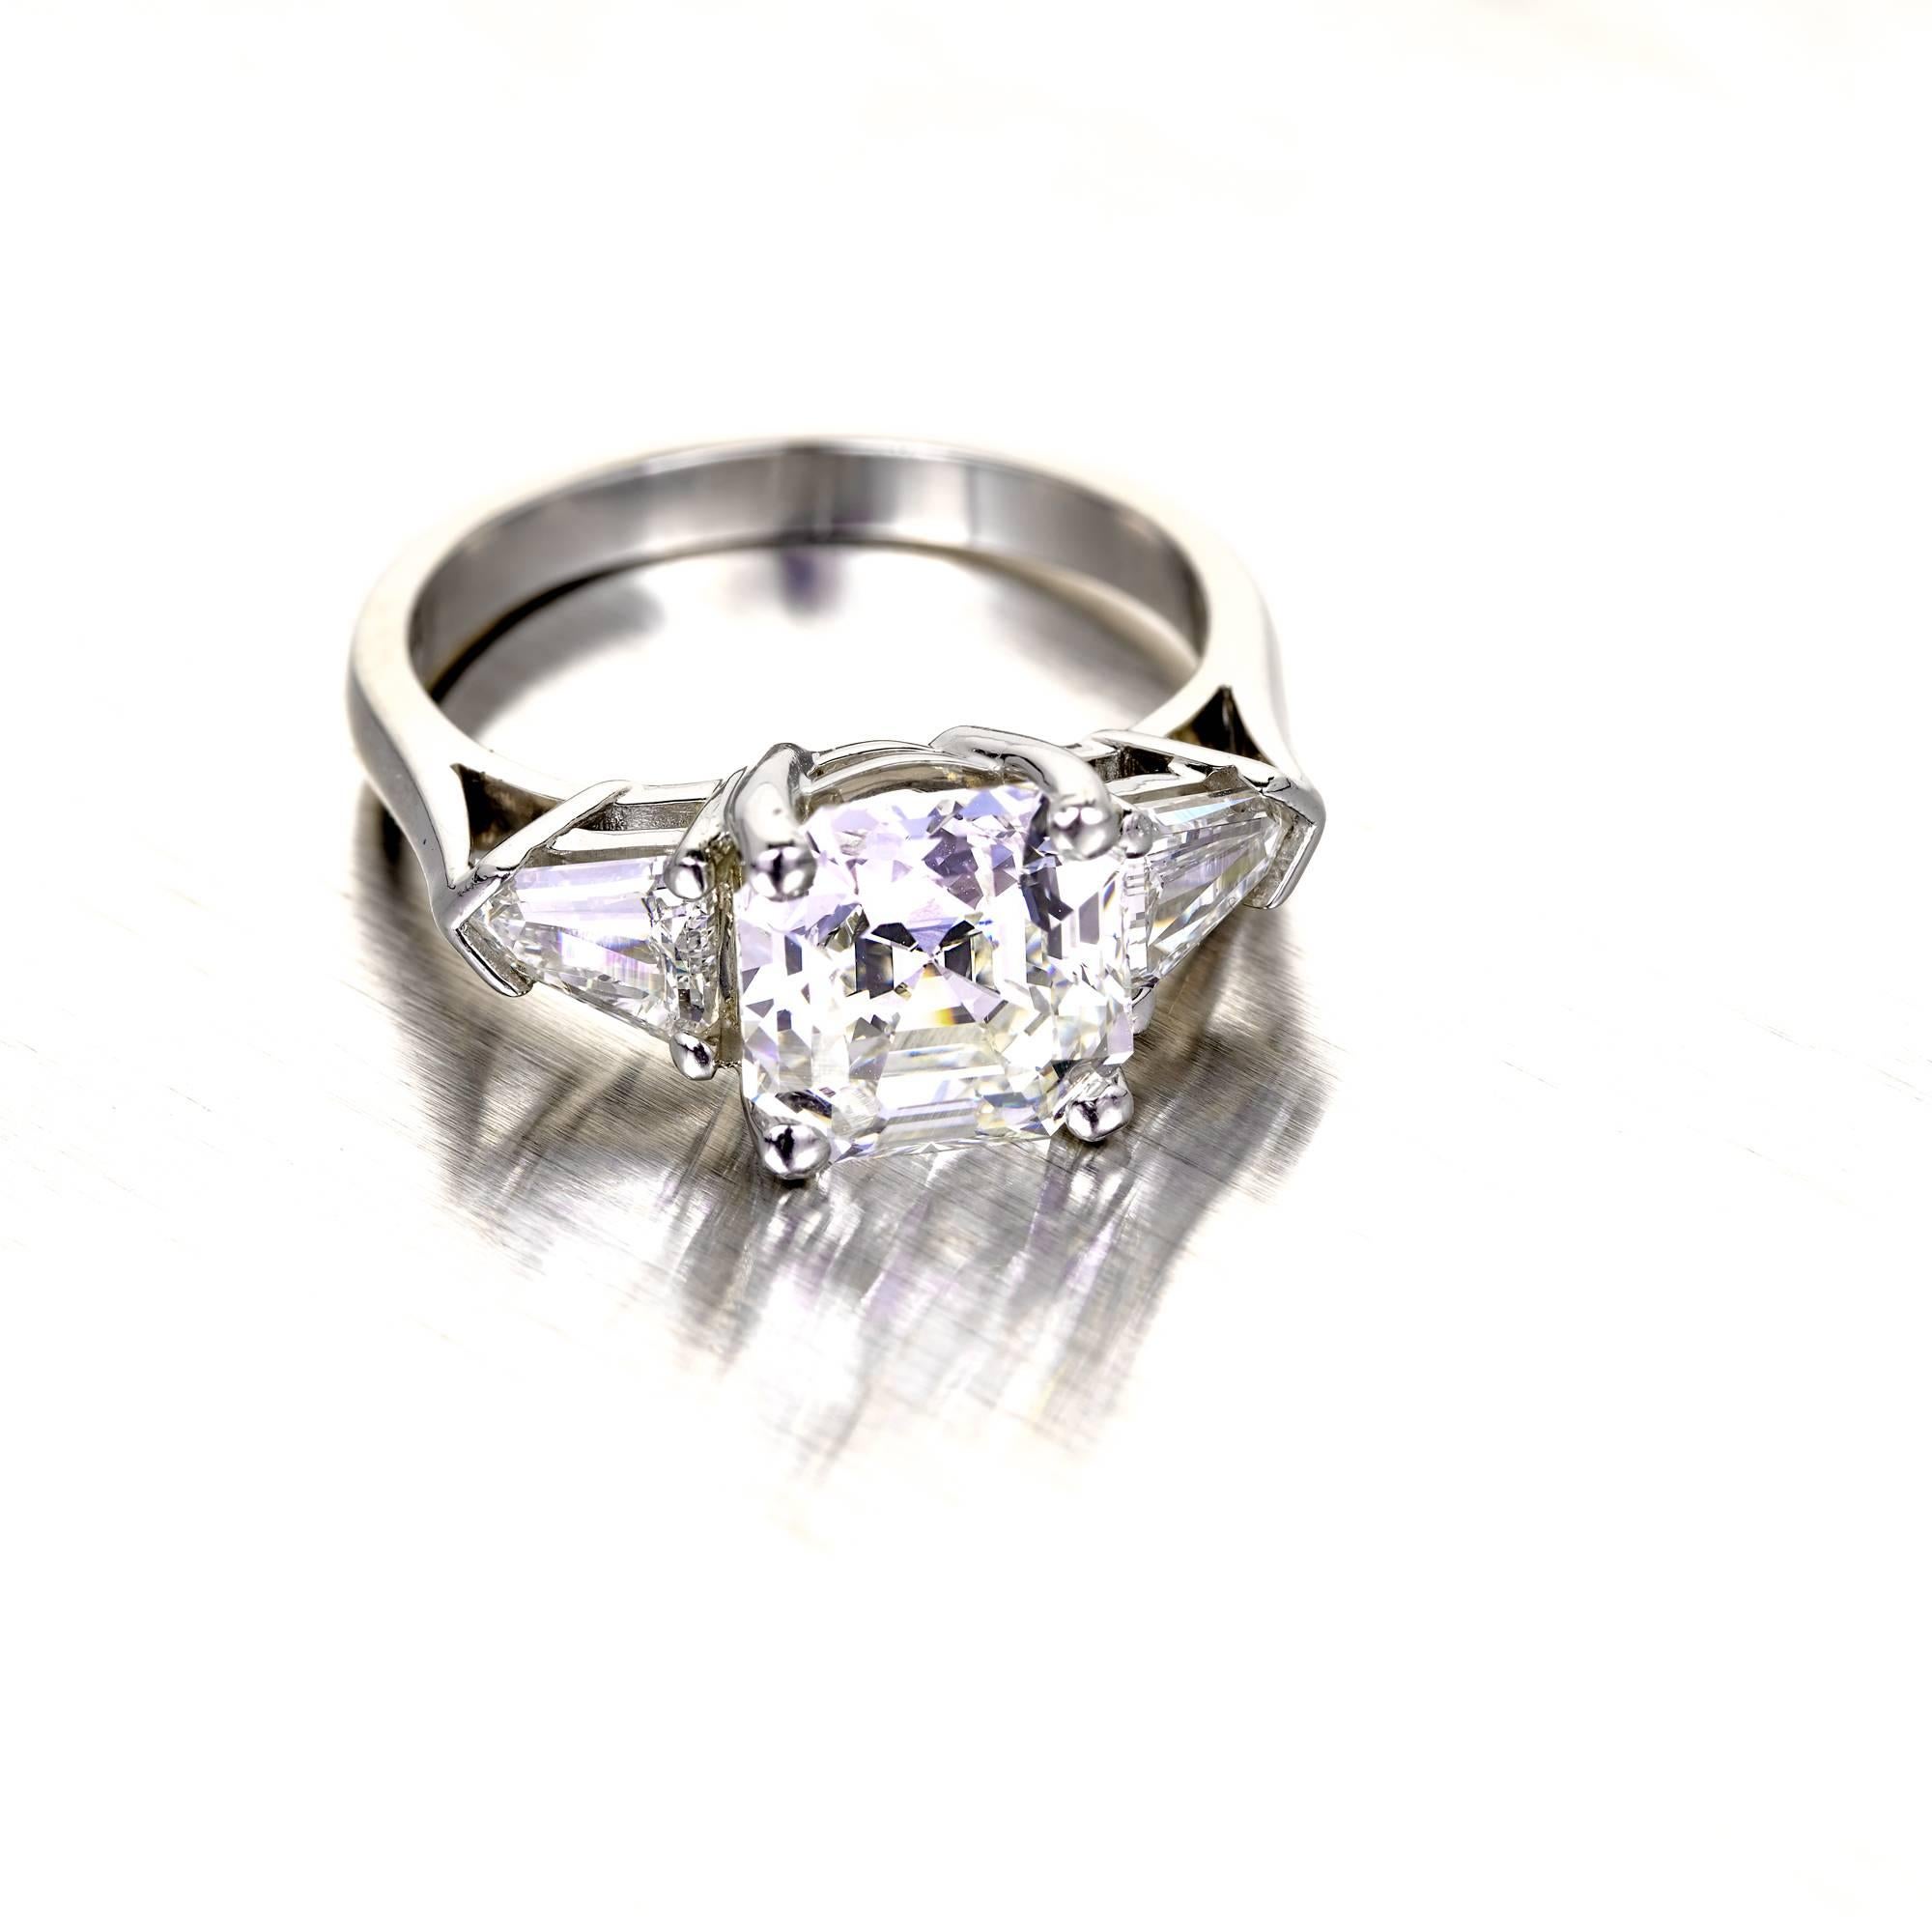 Peter Suchy Asscher Diamond Engagement Ring Platinum Bullet Cut Side Diamond 1